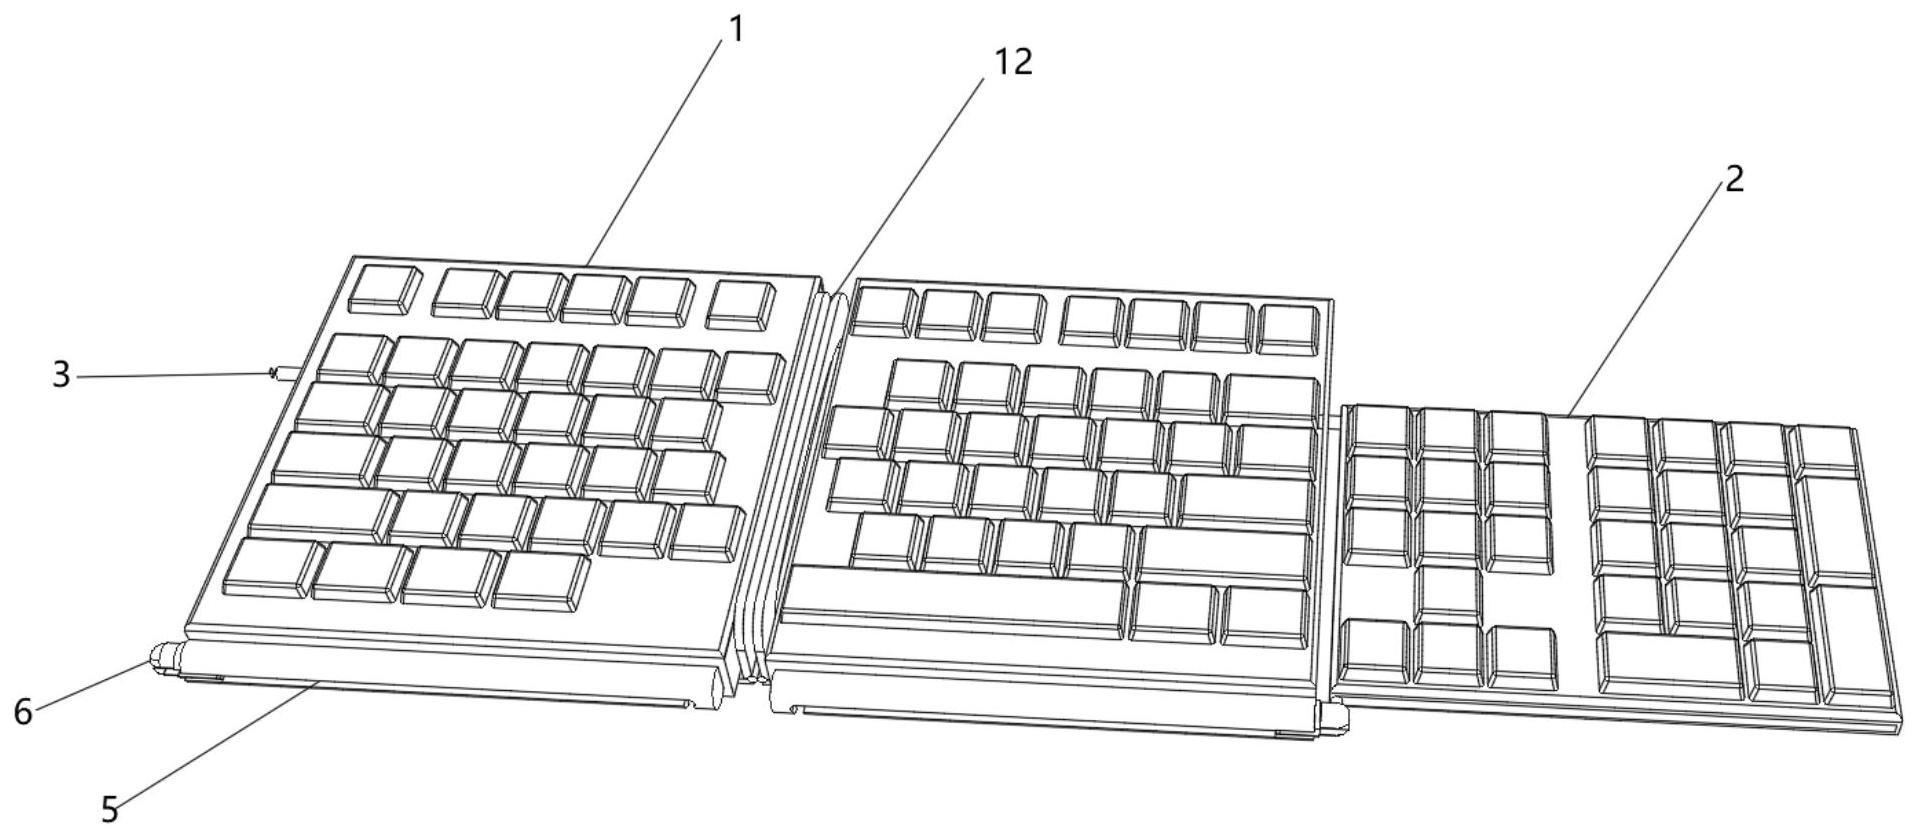 一种可进行多角度折叠的电脑键盘的制作方法